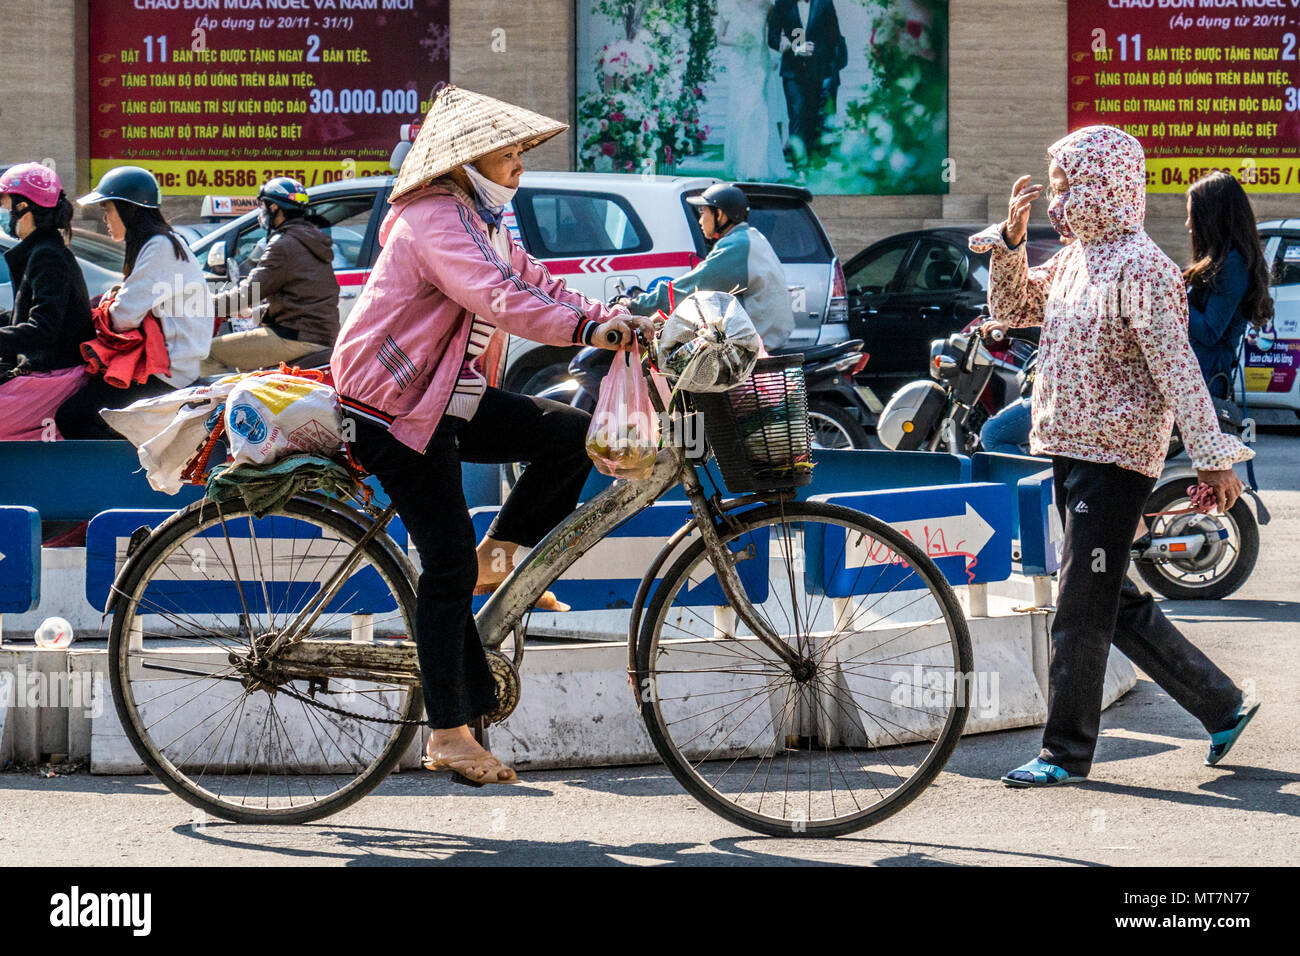 Xe xích lô trẻ em Việt Nam - ảnh chất lượng cao: Xe xích lô trẻ em Việt Nam là hình ảnh đầy tình cảm và đáng yêu mà bạn không thể bỏ qua. Với ảnh chất lượng cao, bạn sẽ nhìn thấy được vẻ đẹp của cảnh quan Việt Nam và sự tiếp đón nồng nhiệt của những người trẻ tuổi. Hãy thưởng thức bức ảnh này và khám phá thêm nữa trên trang web. 